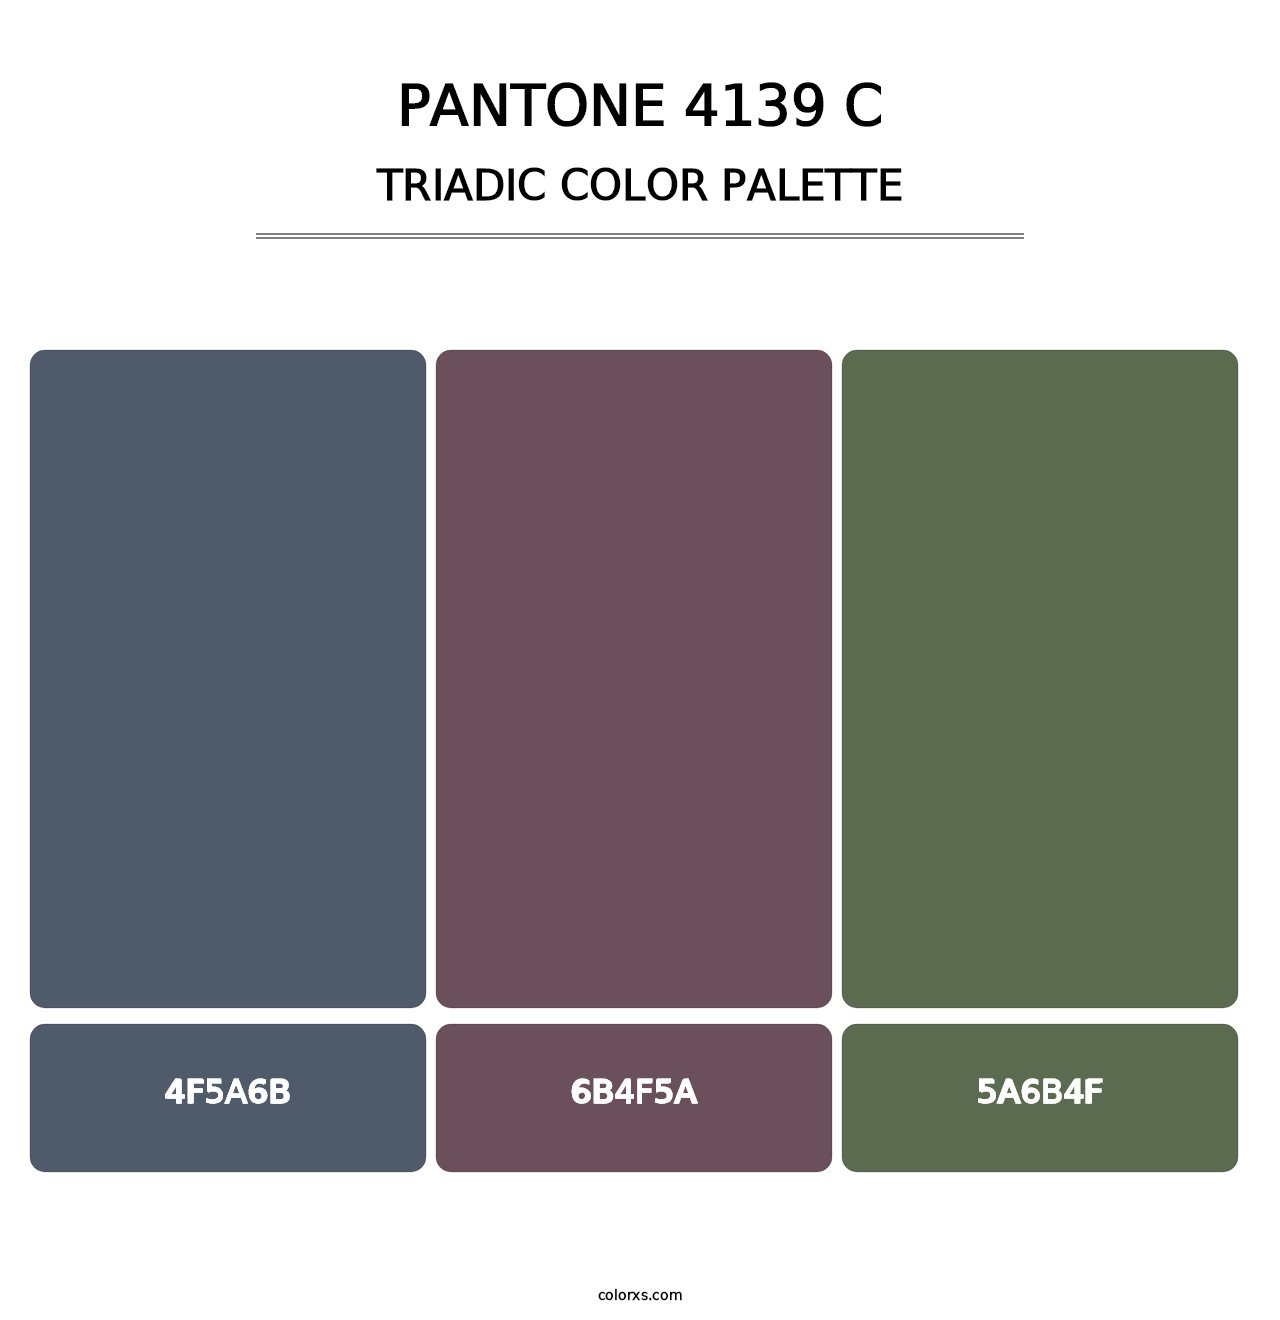 PANTONE 4139 C - Triadic Color Palette